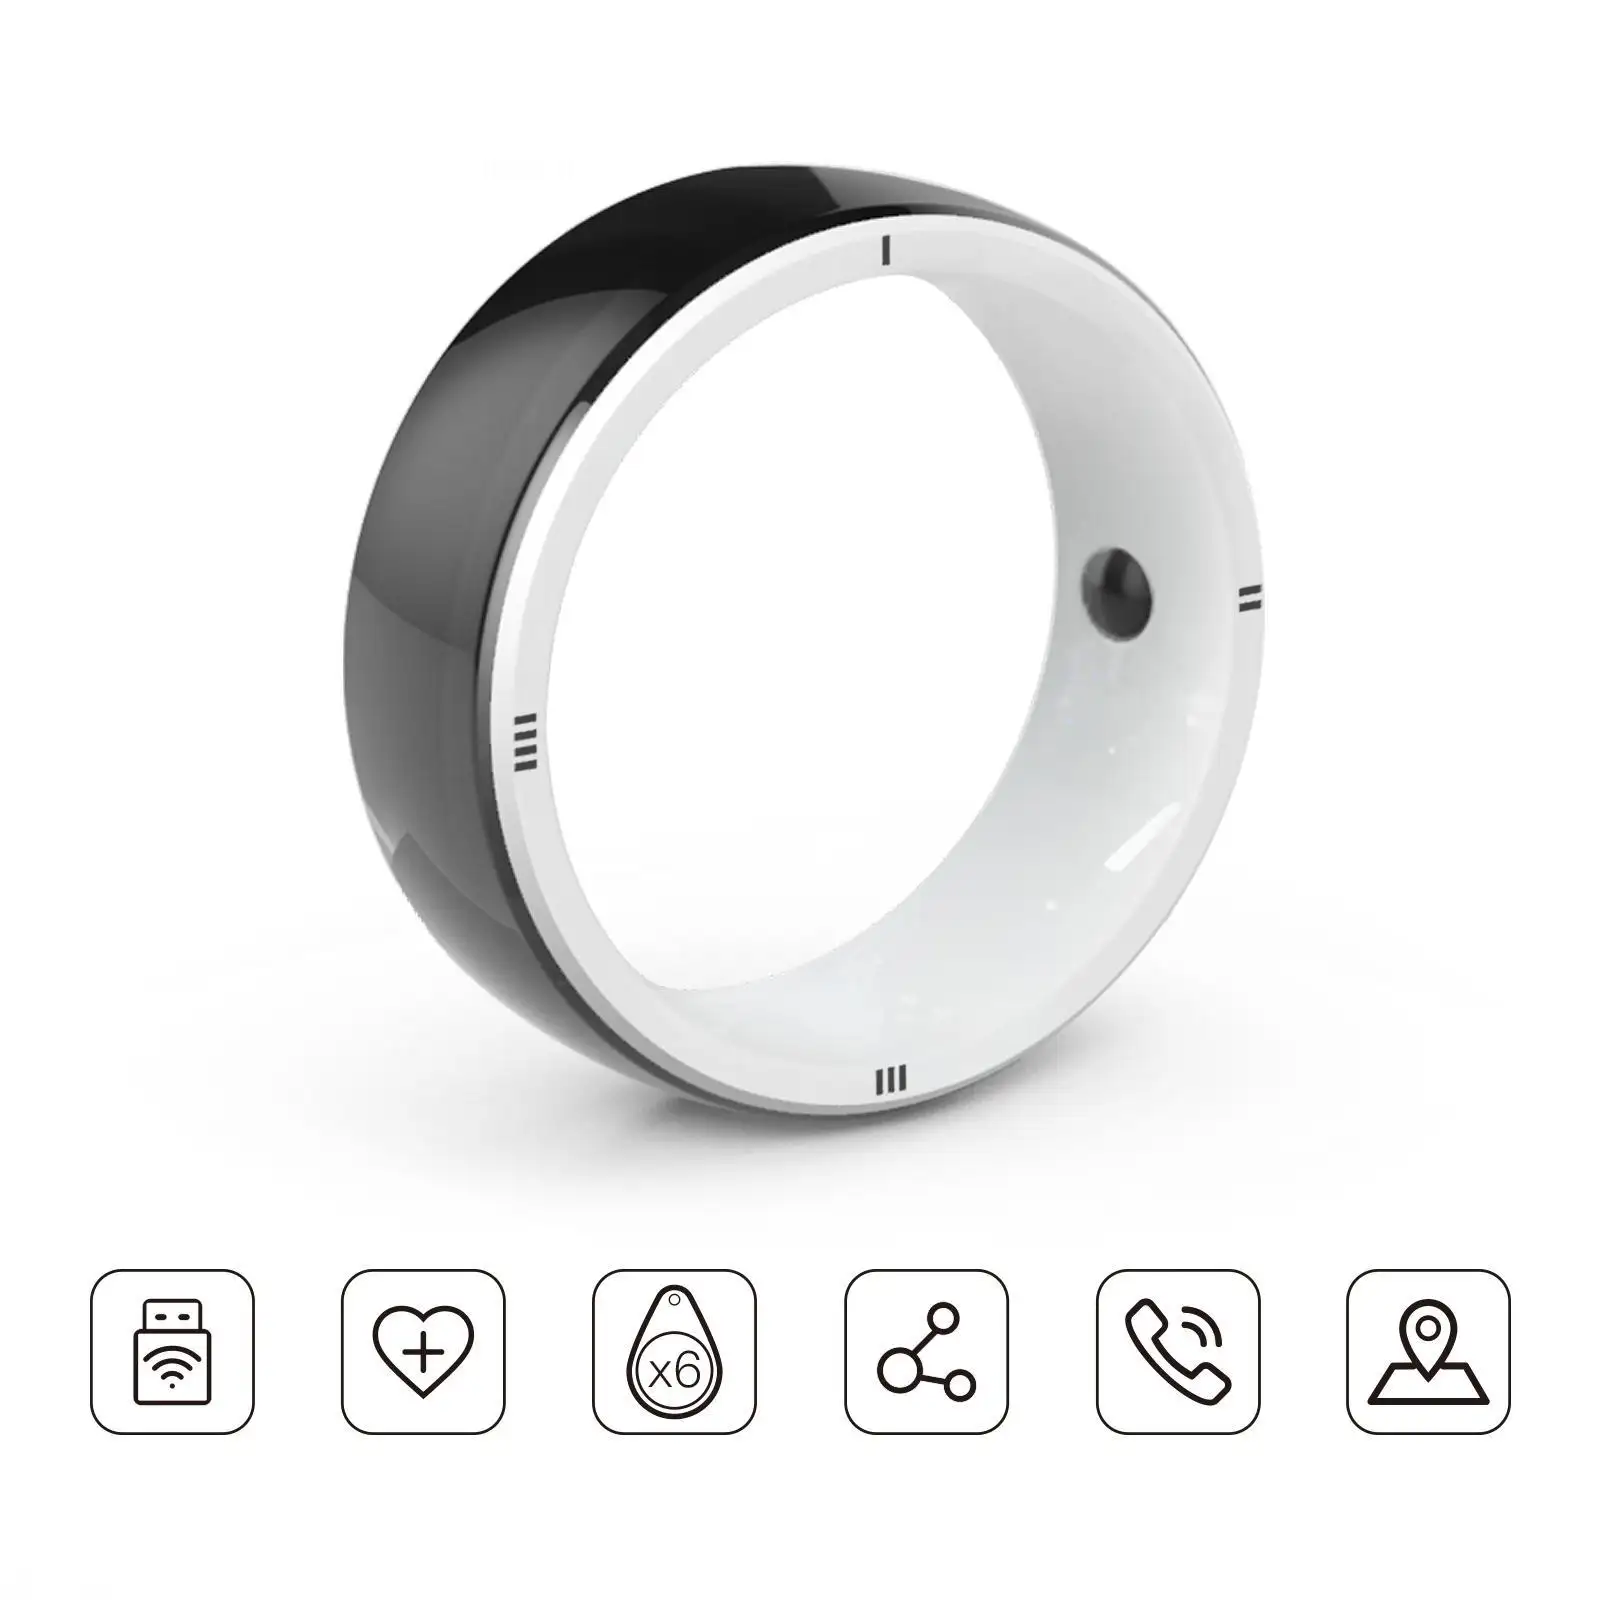 JAKCOM R5 Smart Ring New Smart Ring Super valeur que le haut-parleur avancé zénith meilleures marques d'ordinateurs portables 2018 rca à scart camping